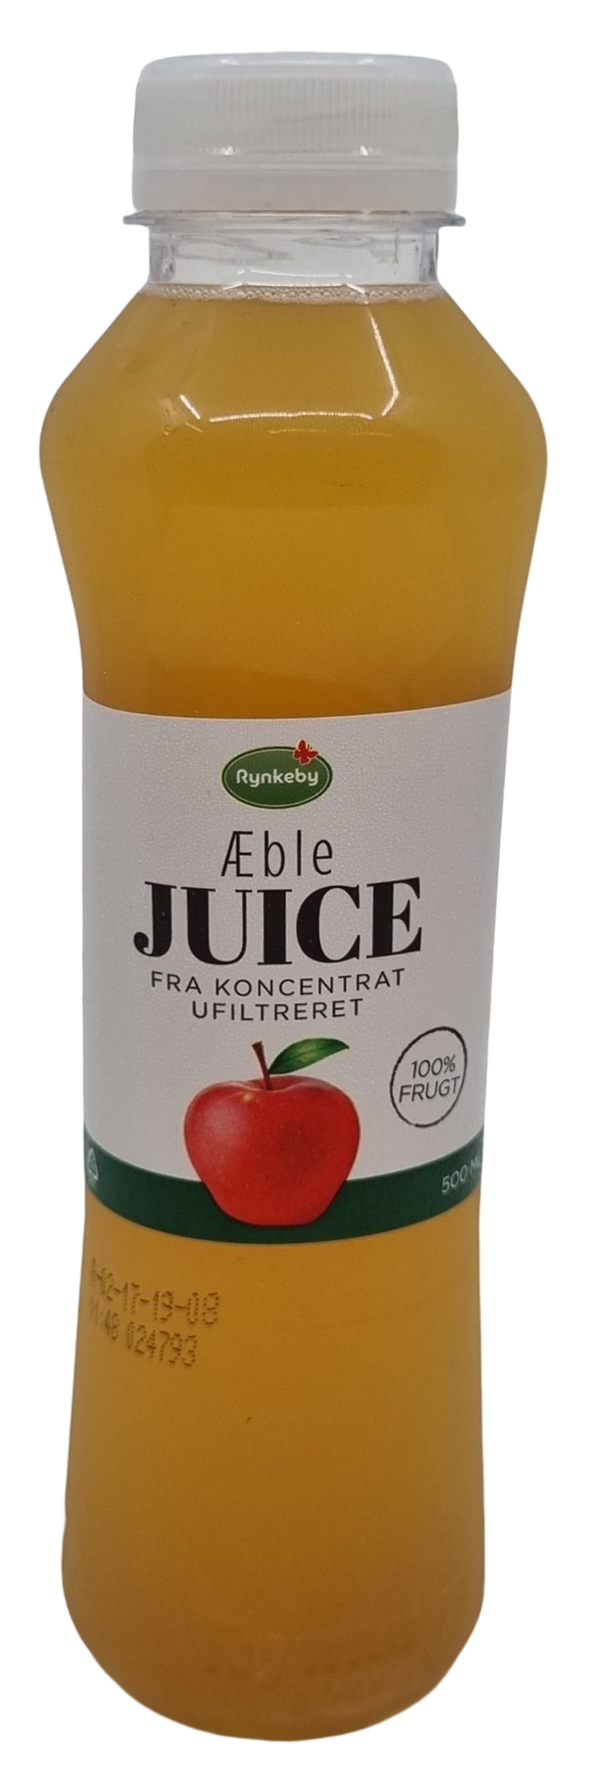 1/2L Rynkeby Æble Juice